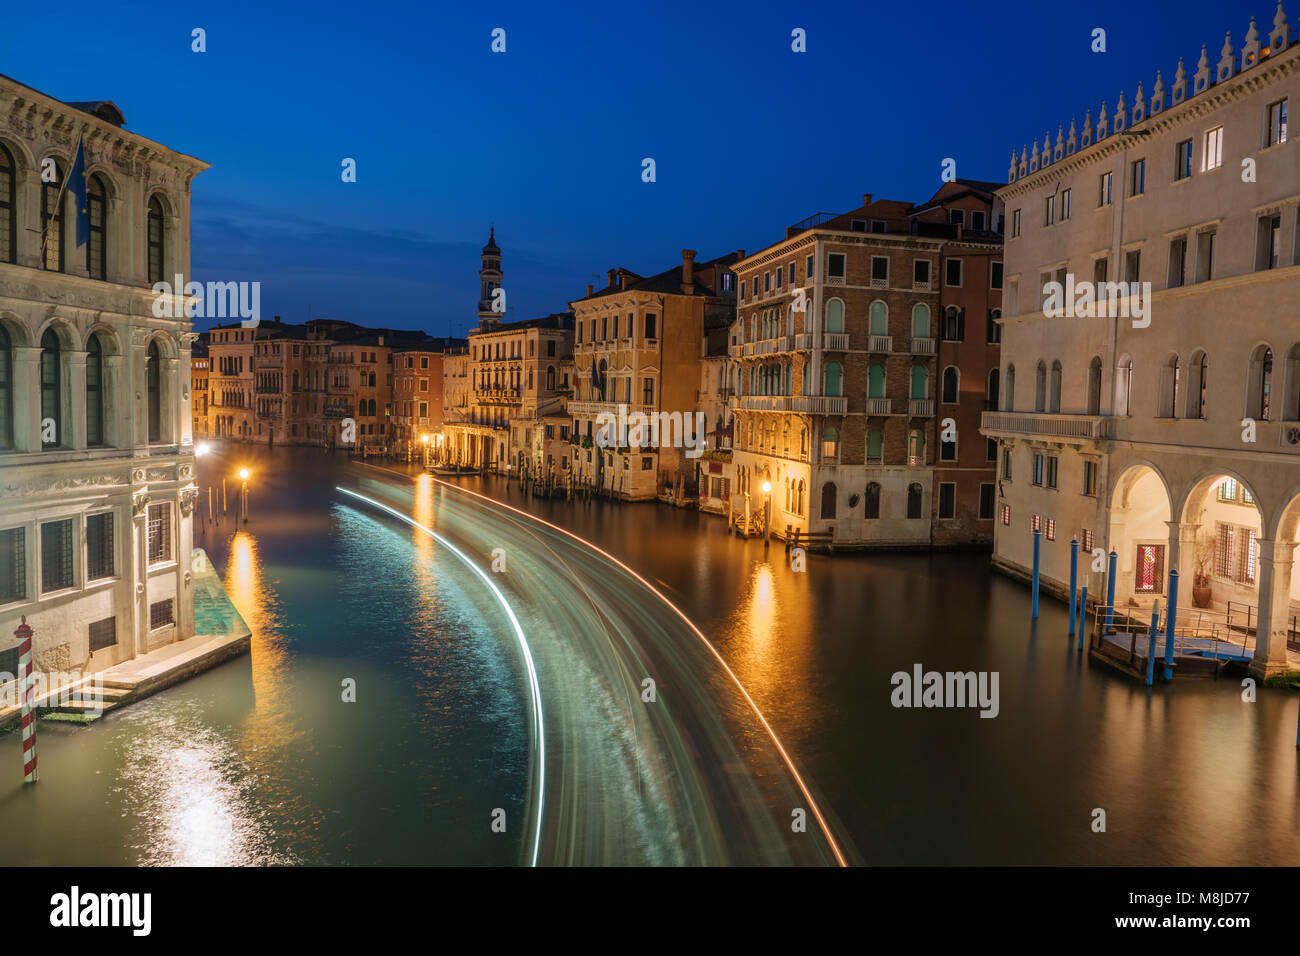 En la noche de Venecia, Italia, Europa. Grand Canal, los antiguos edificios. Water Street, casas históricas. Complejos Habitacionales tradicionales italianos en el canal. Viajes famosos des Foto de stock